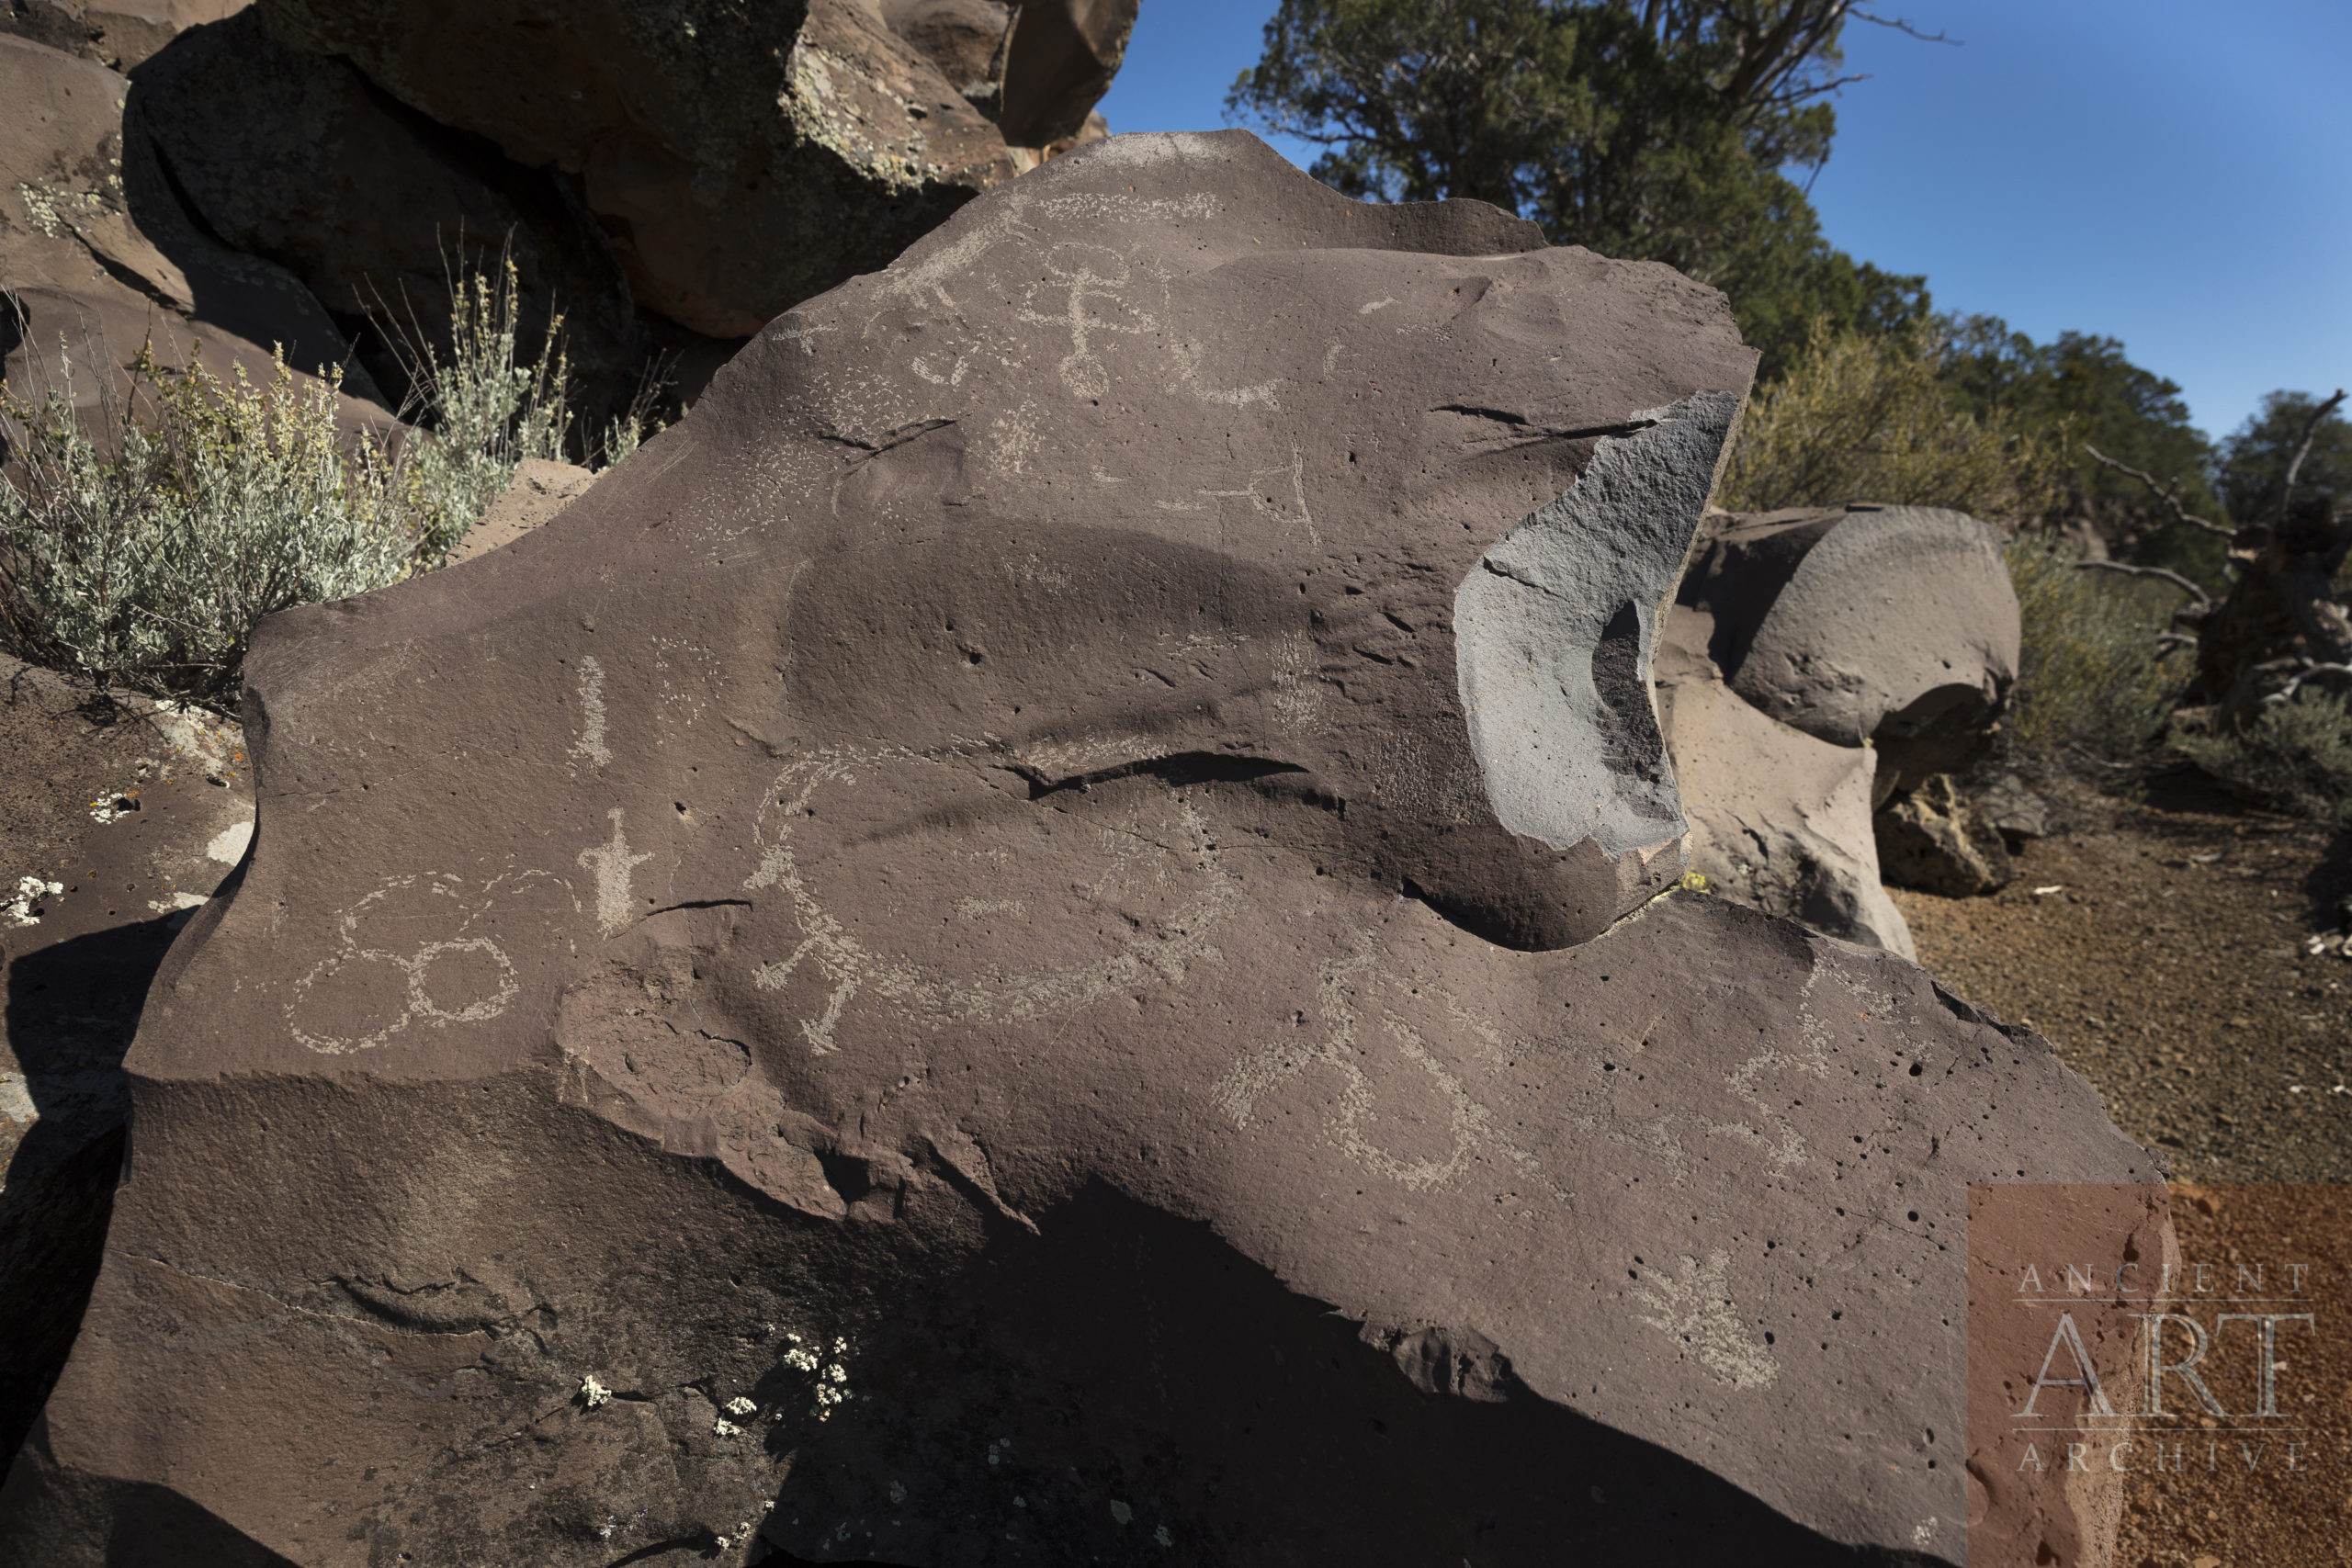 Nampaweap petroglyph site